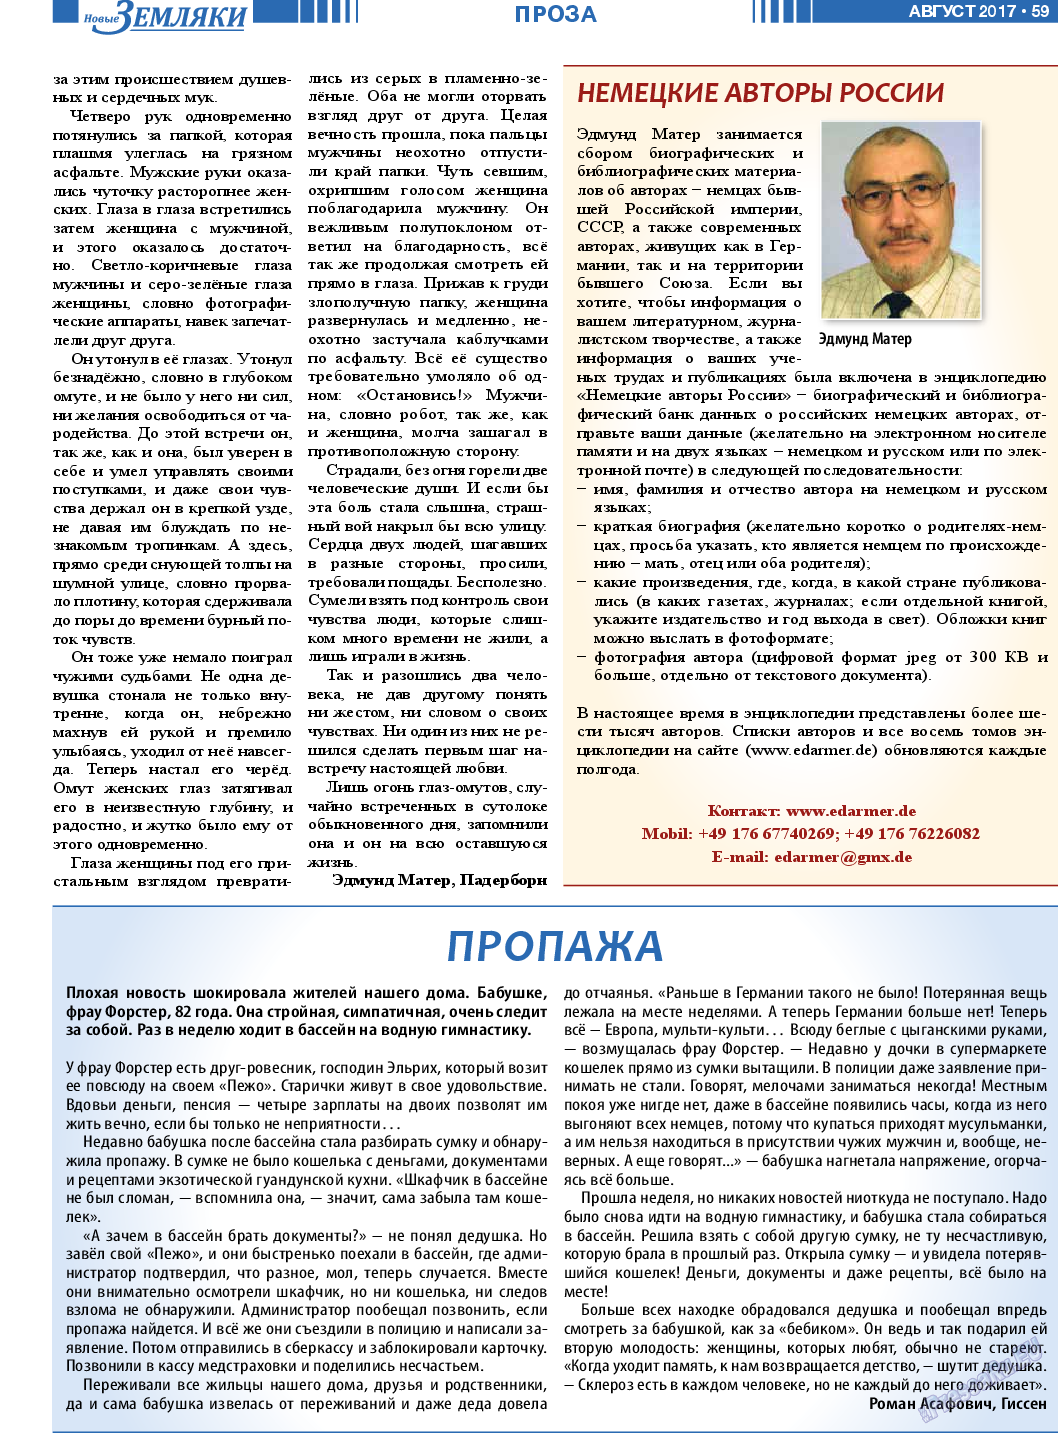 Новые Земляки (газета). 2017 год, номер 8, стр. 59